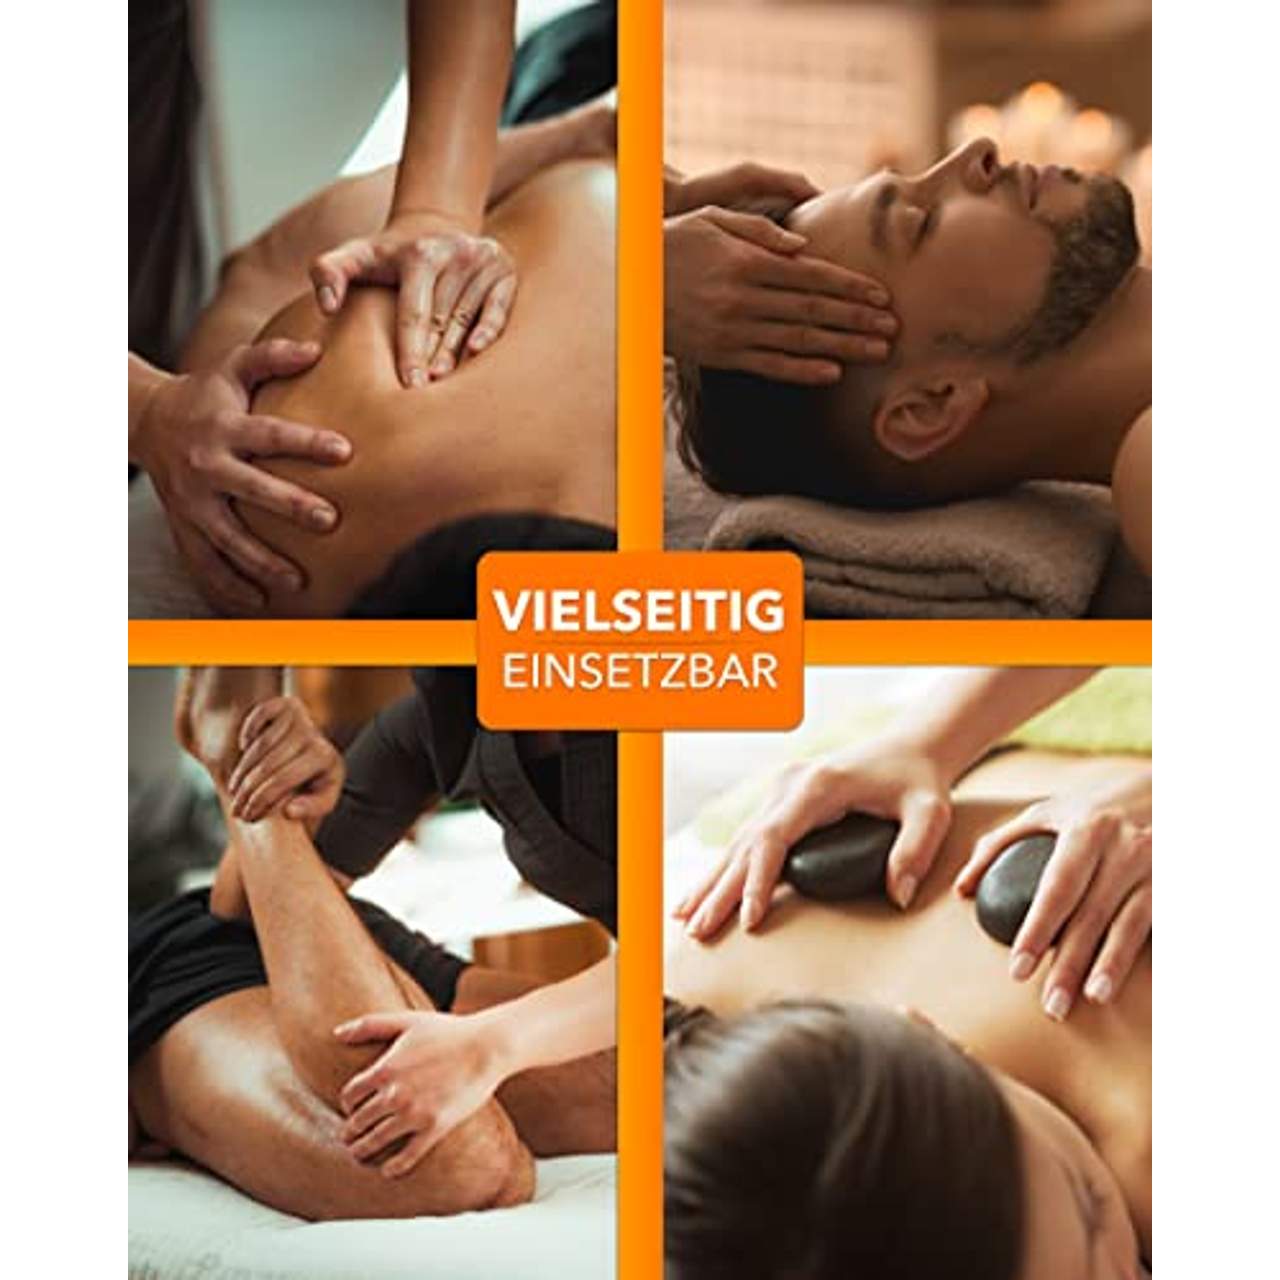 MASSUNDA Comfort Light Massage-Liege klappbar und höhenverstellbar